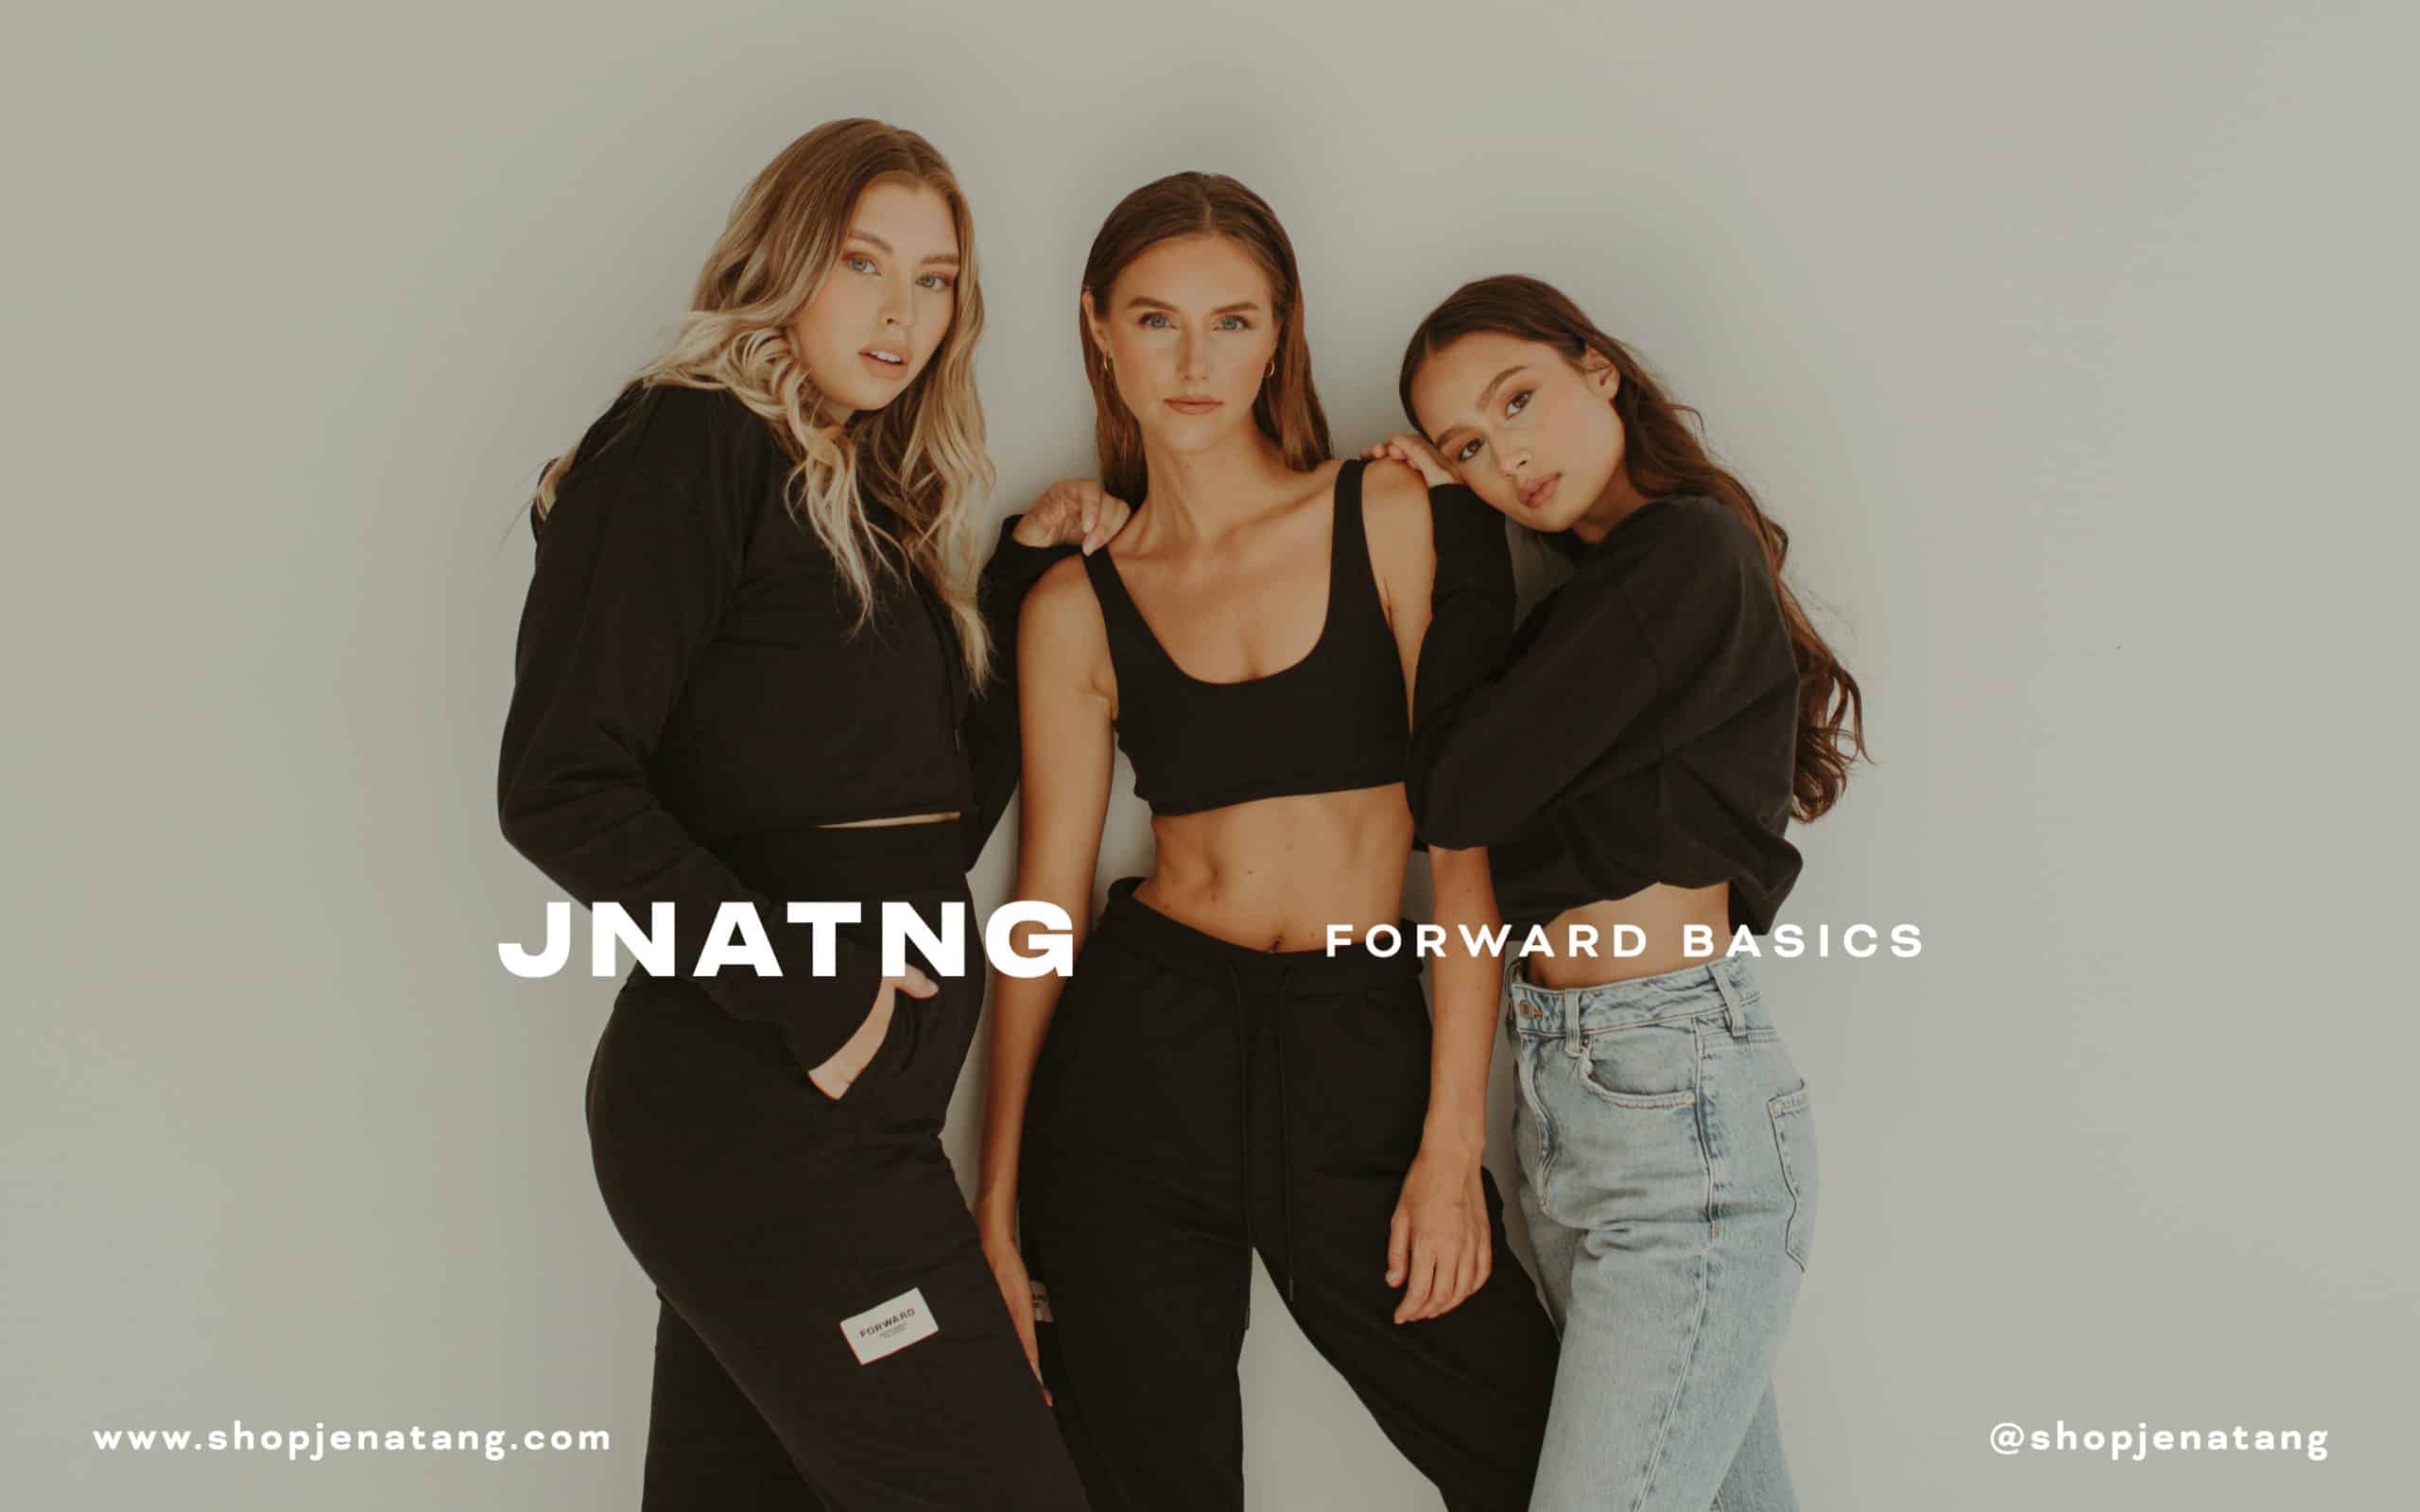 Three women wearing JNATNG clothing